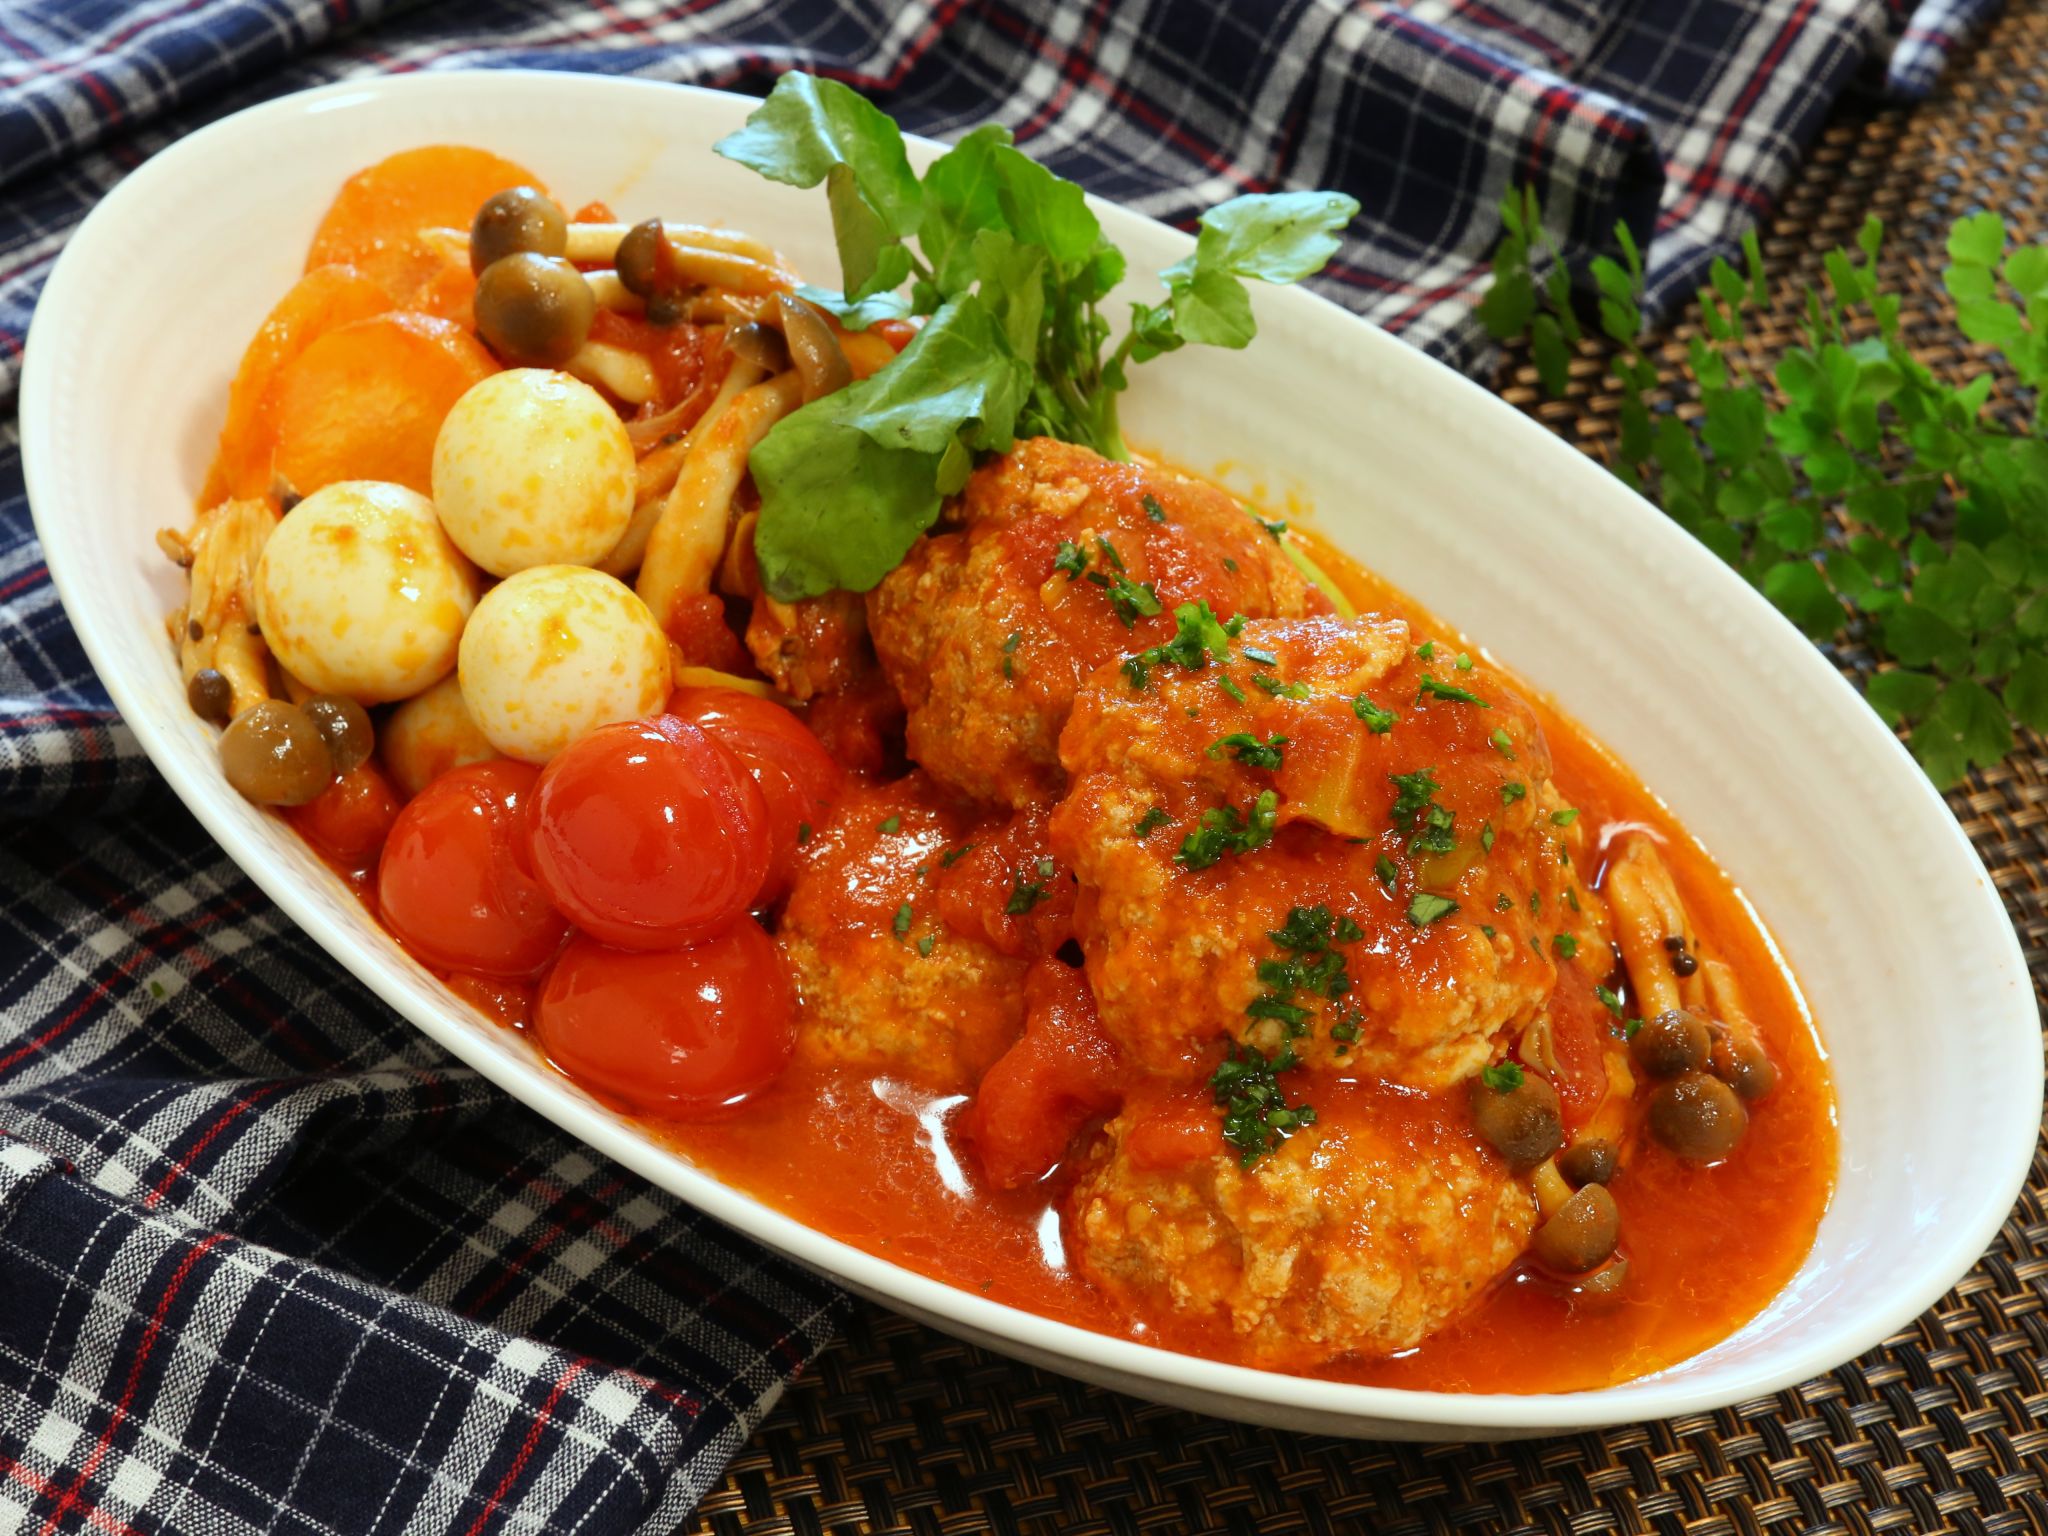 ミートボールのトマト煮のレシピ 柳澤英子さんのおすすめ やまでら くみこ のレシピ